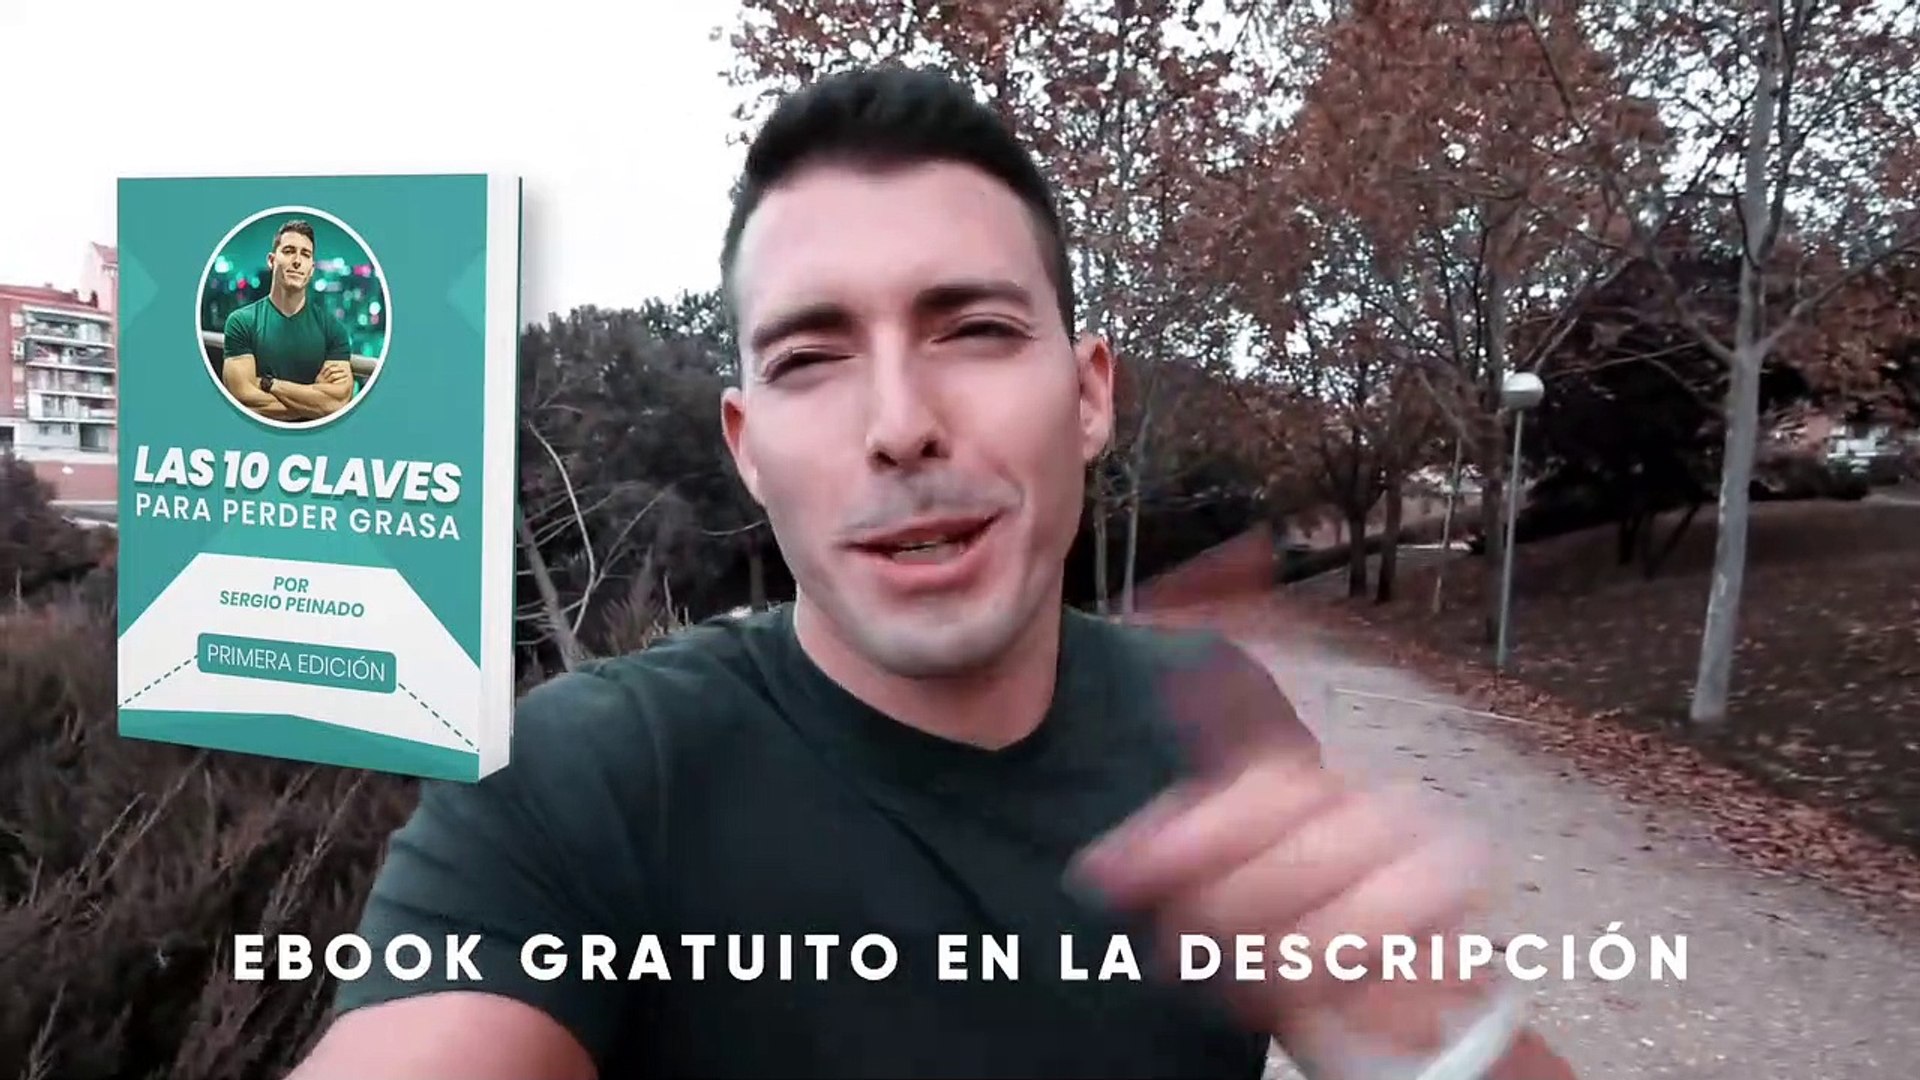 GANAR MÚSCULO EN CASA¿EL PAN ENGORDA Sergio Peinado responde - Vídeo  Dailymotion